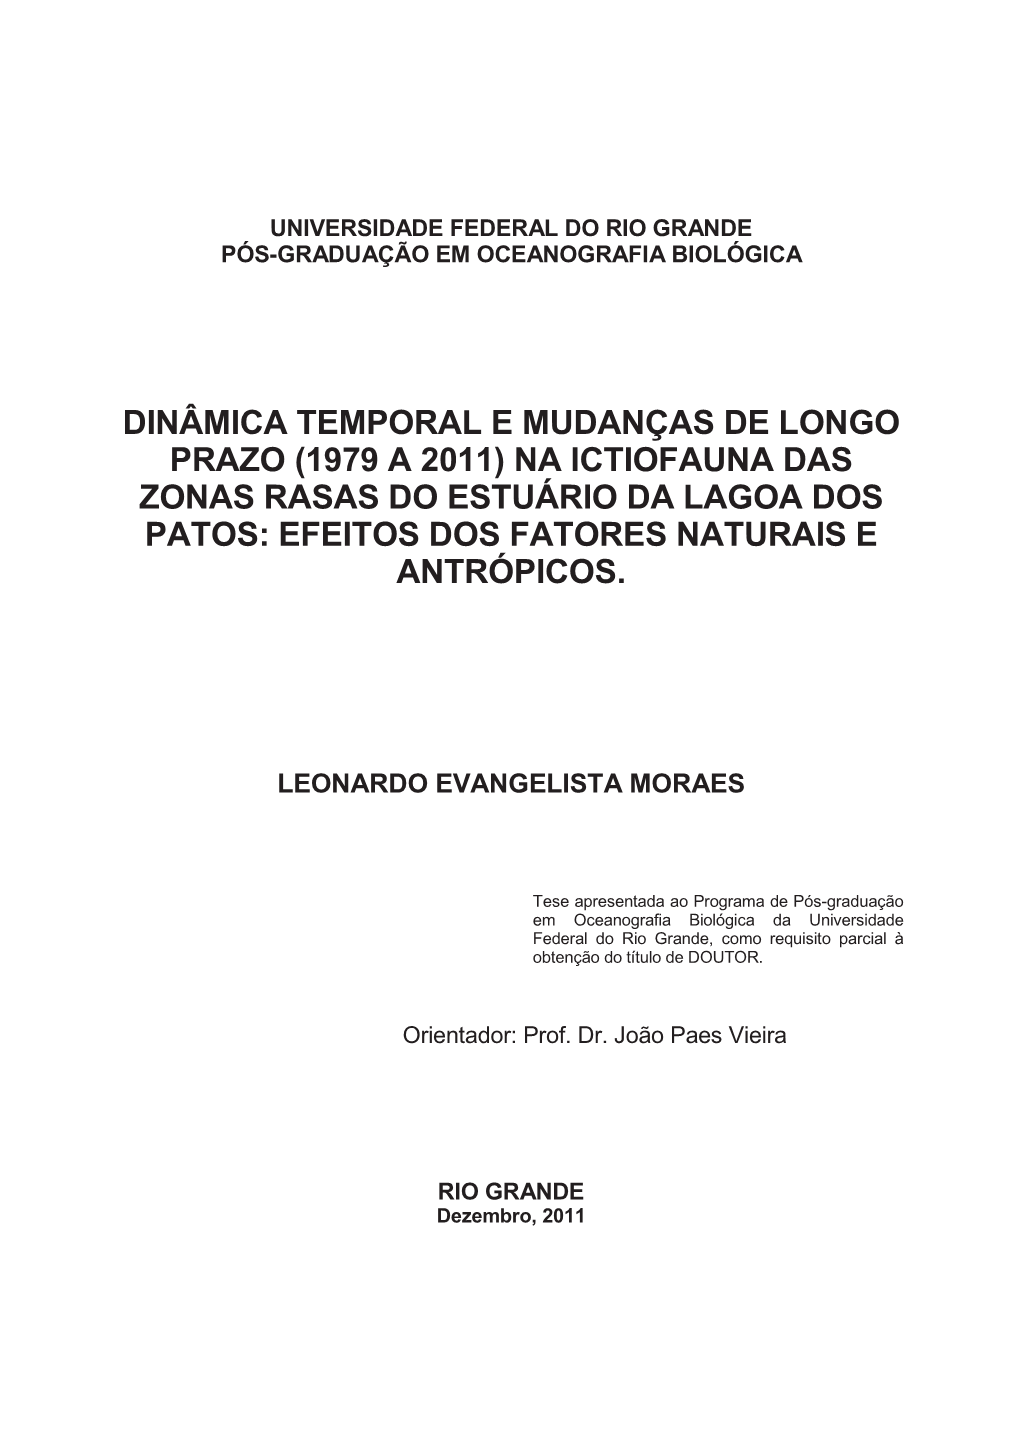 Dinâmica Temporal E Mudanças De Longo Prazo (1979 a 2011) Na Ictiofauna Das Zonas Rasas Do Estuário Da Lagoa Dos Patos: Efeitos Dos Fatores Naturais E Antrópicos